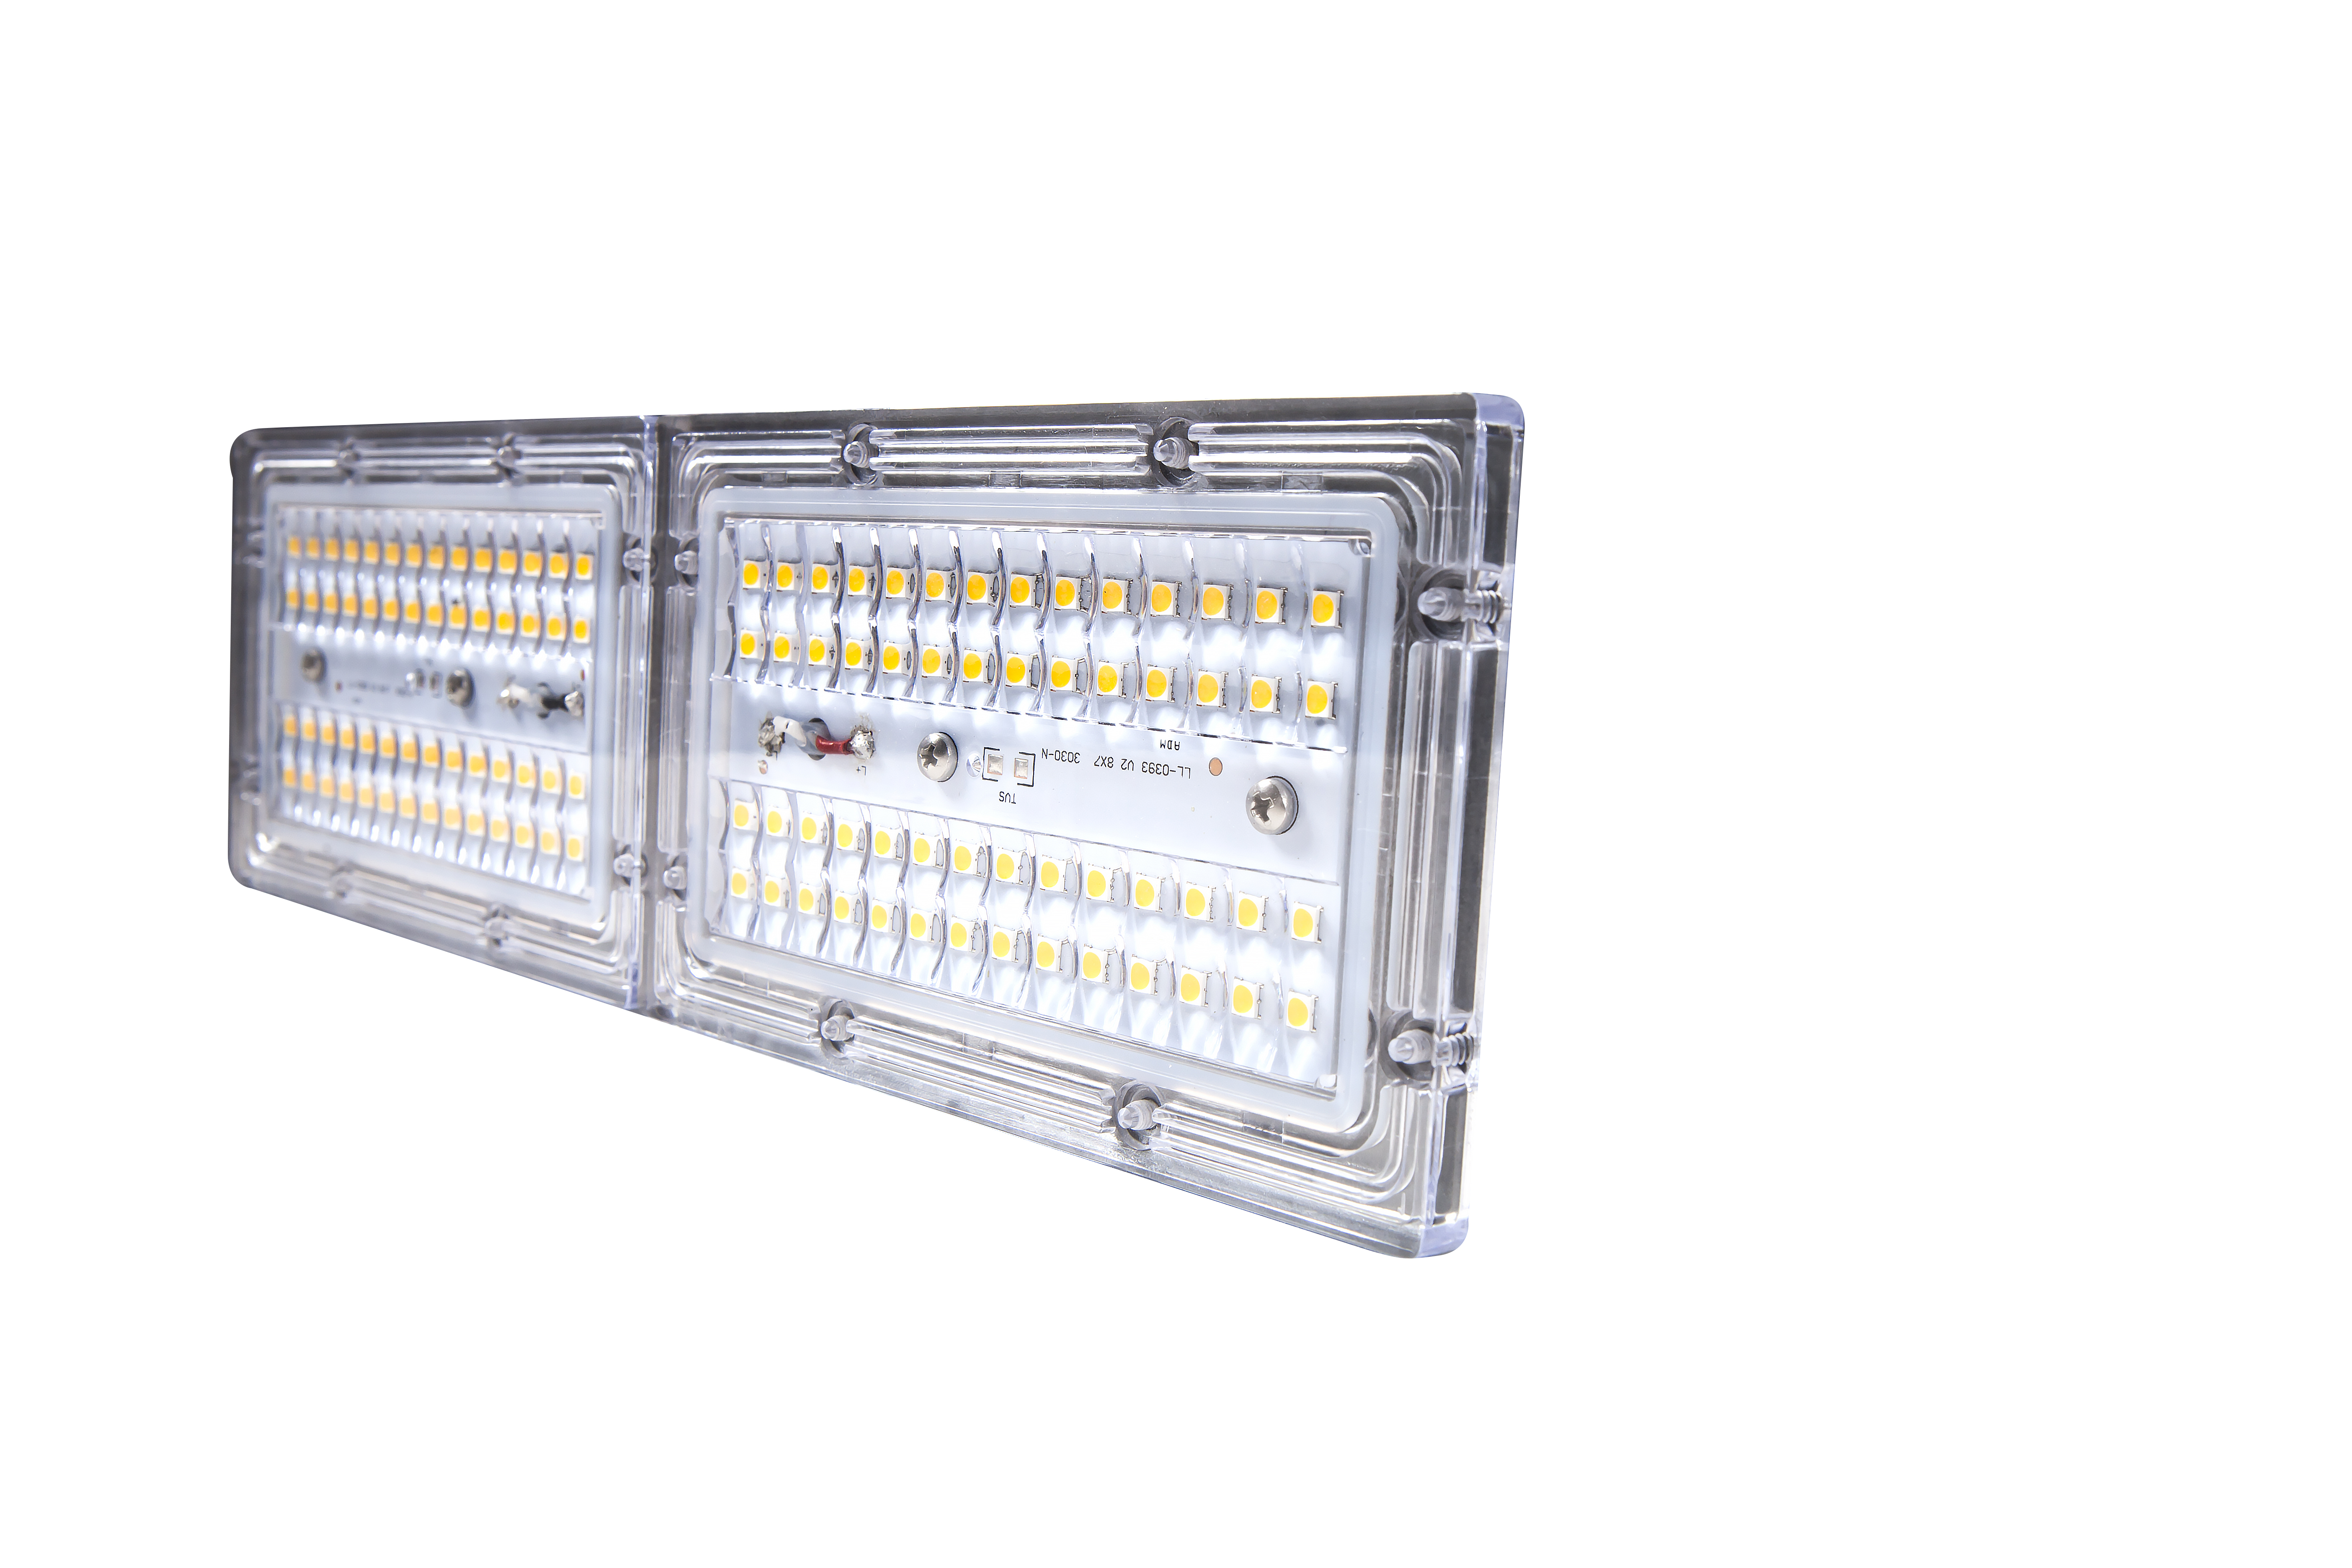 Đèn đường hầm LED dòng TE - Ba mô-đun (Giá đỡ quốc tế)